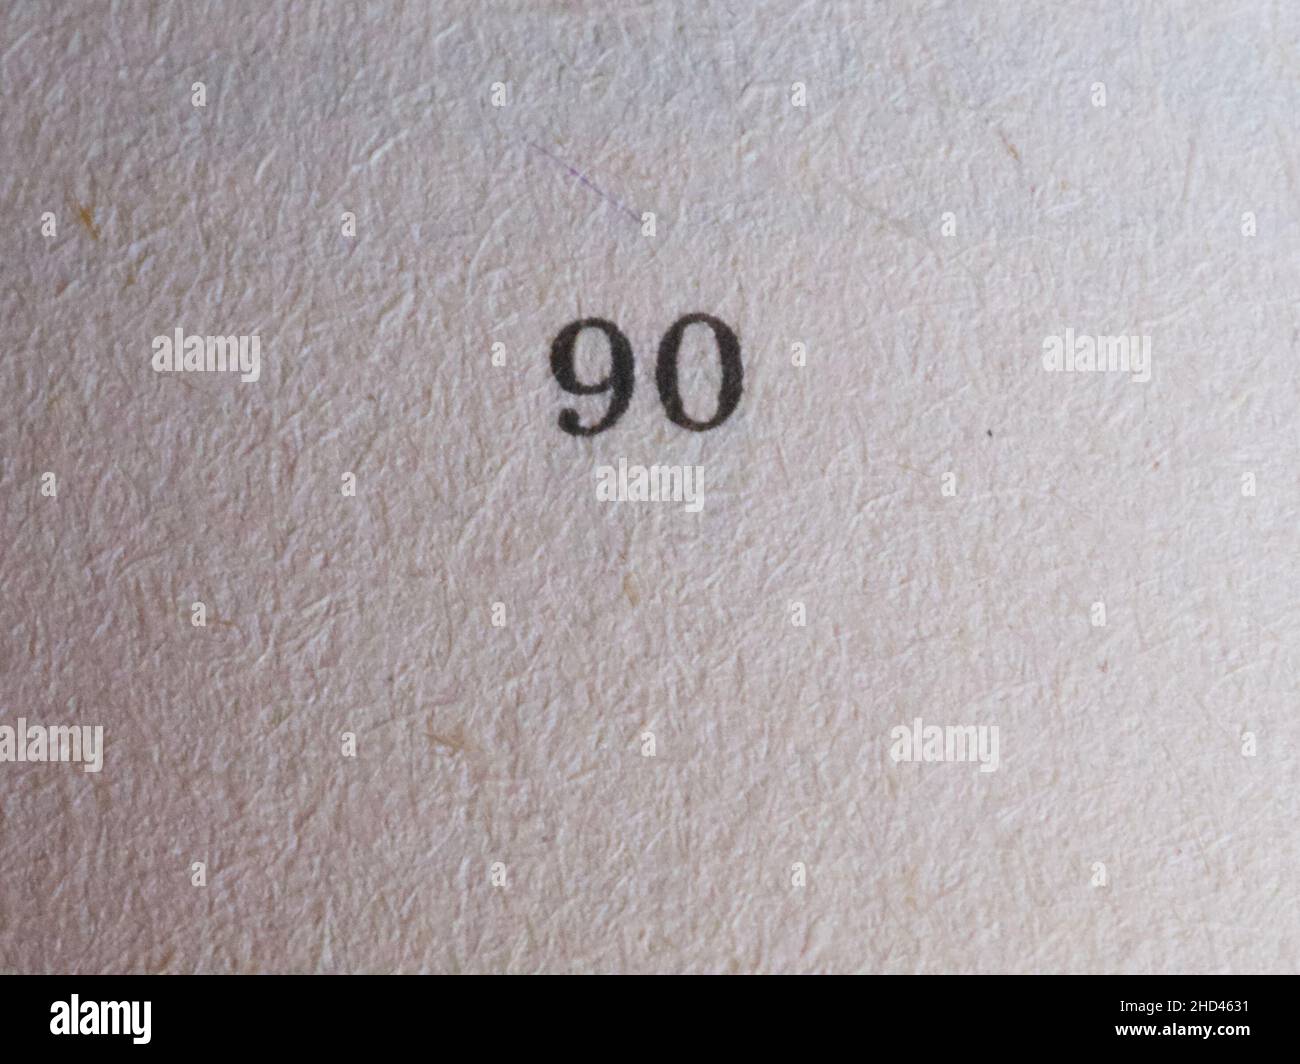 Le numéro 90 imprimé sur un morceau de papier.Texture du papier. Banque D'Images